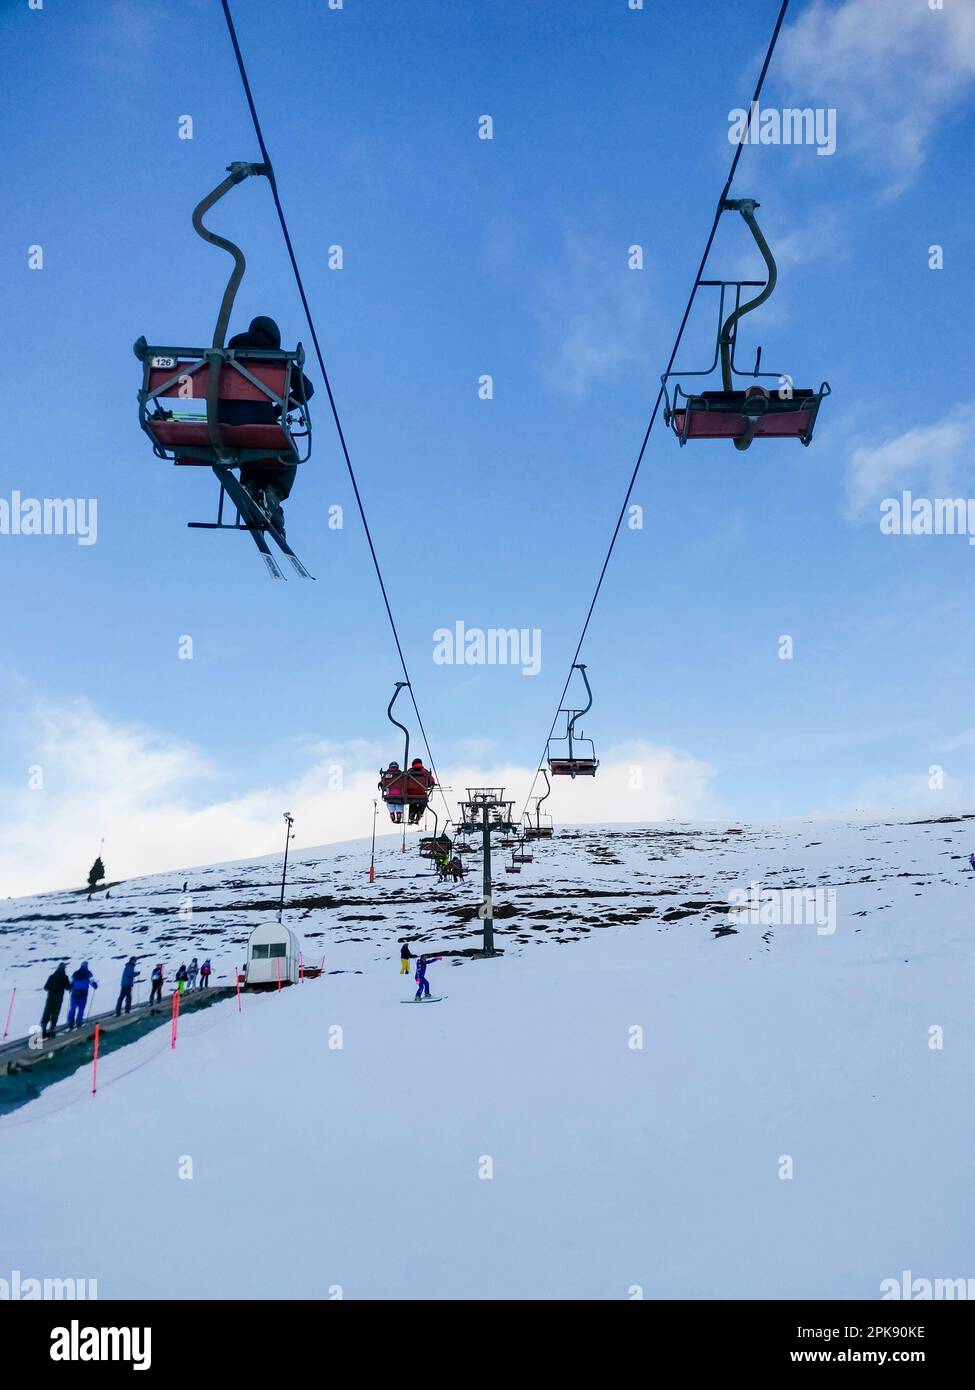 Station de ski, télésiège, de dessous, neige, bleu, ciel, skieur Banque D'Images